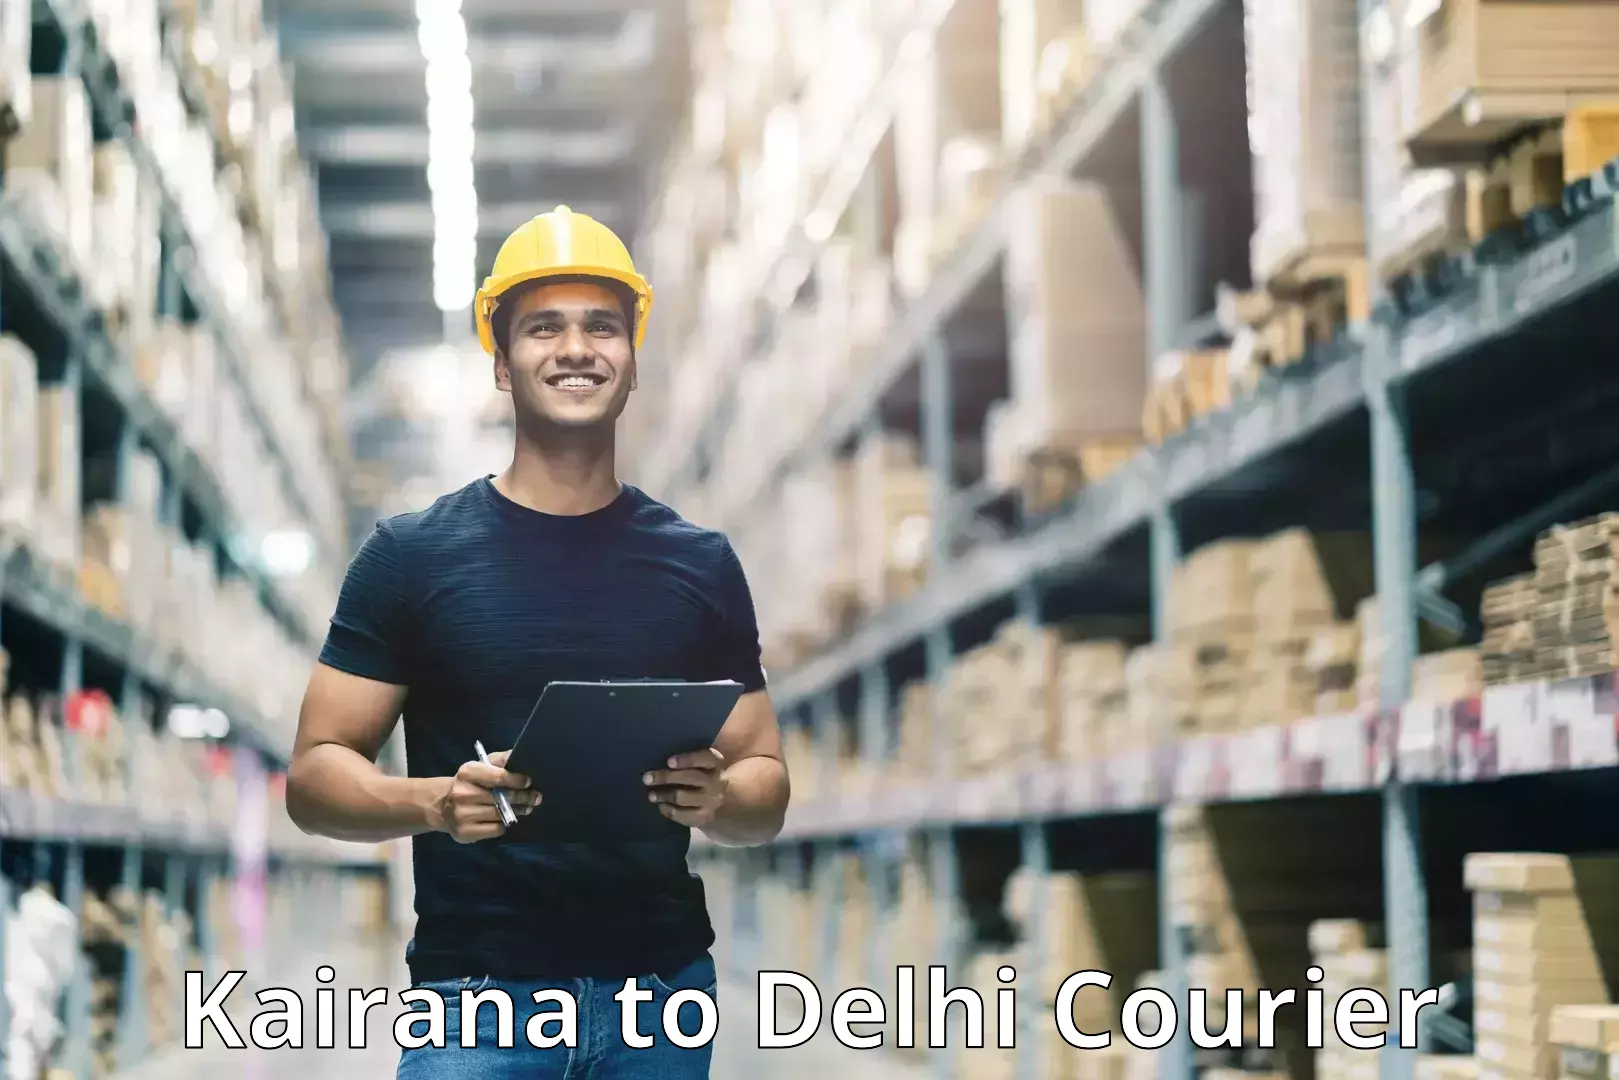 User-friendly delivery service Kairana to Delhi